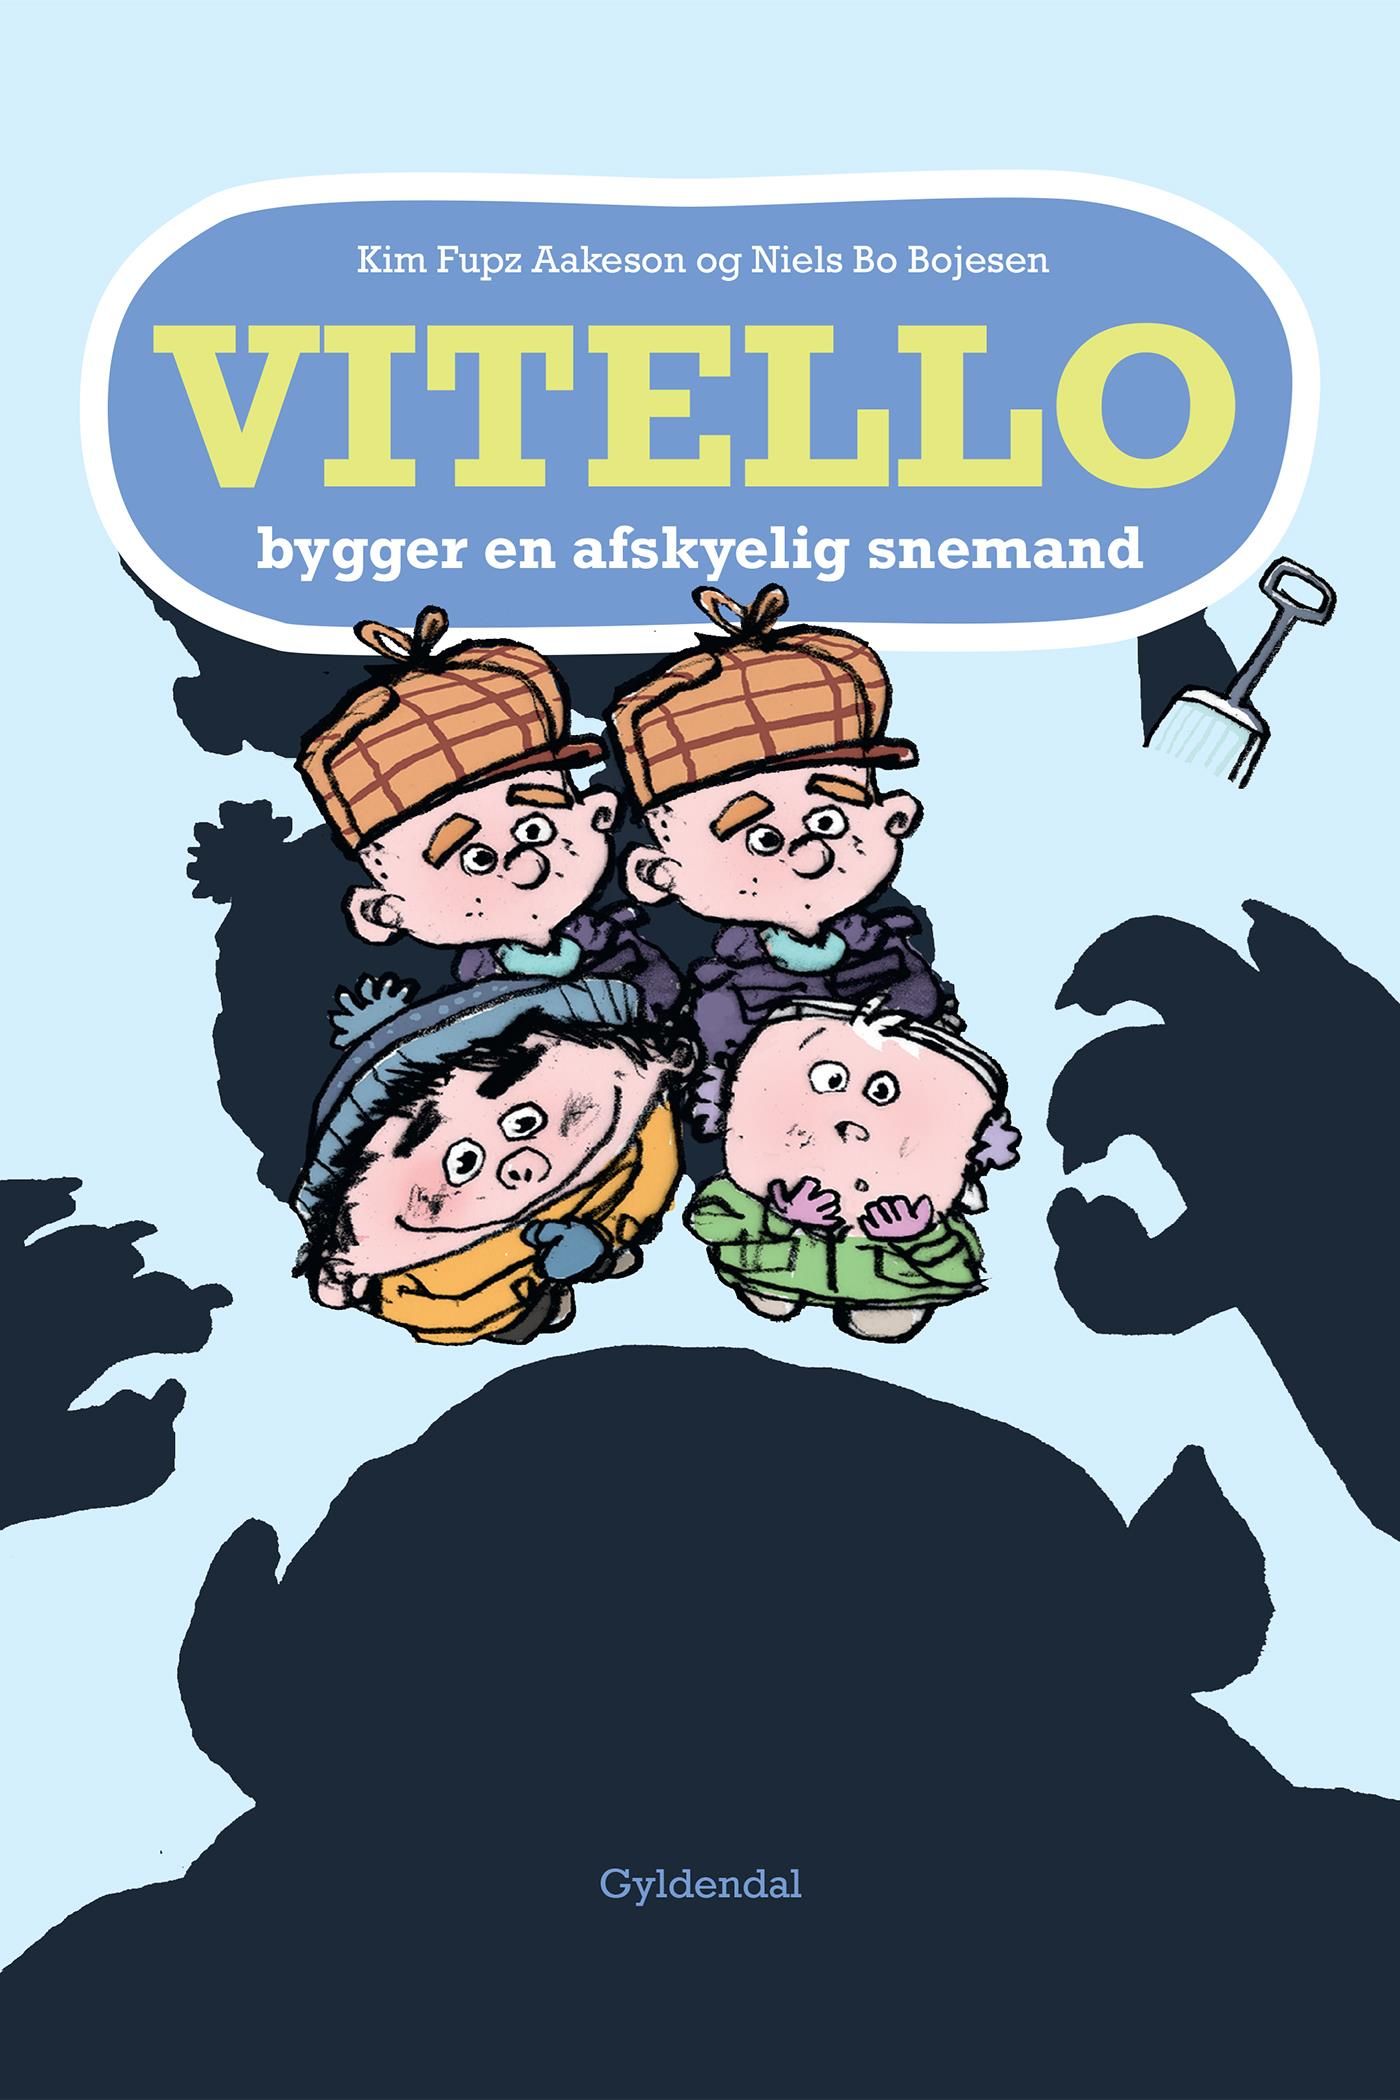 Vitello bygger en afskyelig snemand - Lyt&læs, e-bok av Niels Bo Bojesen, Kim Fupz Aakeson